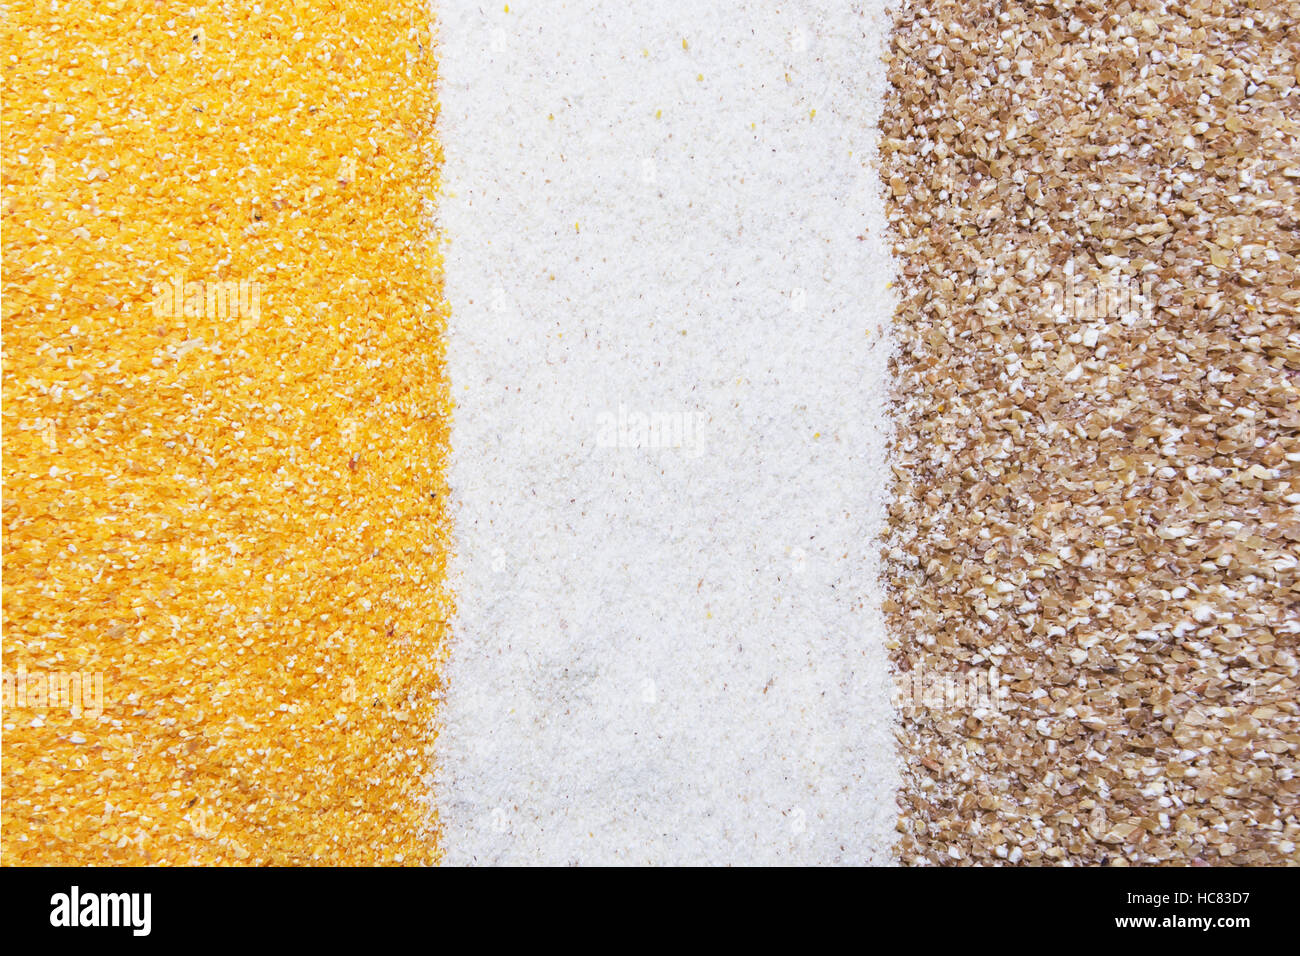 Grieß, Mais und Weizen Grütze Hintergrund, Textur Stockfoto